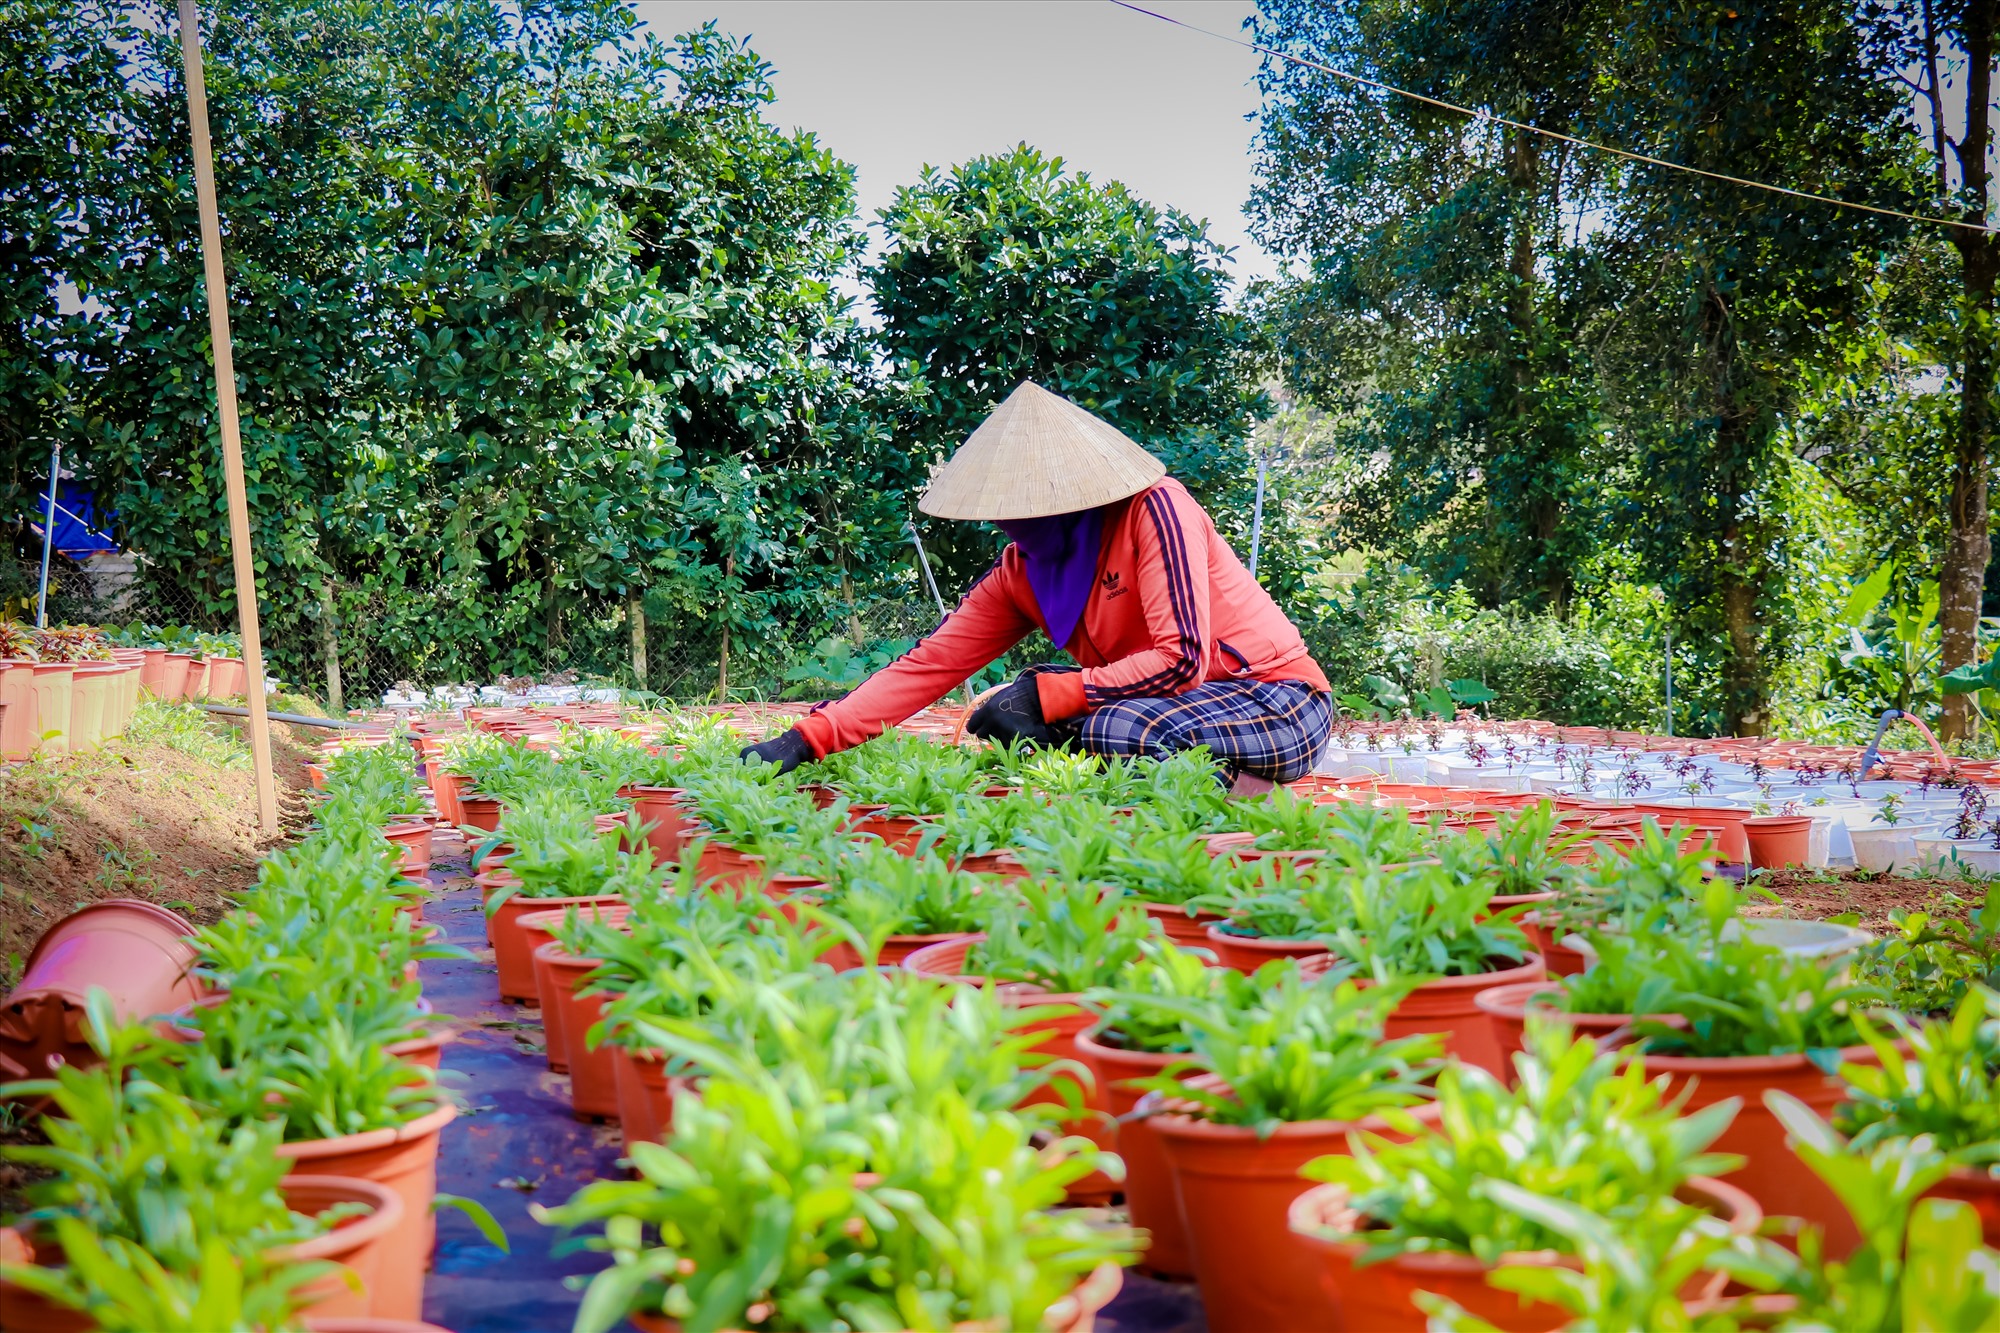 Chị Hà người trồng hoa tại Tân liên (Hướng Hóa), đang chăm sóc những chậu hoa tết trong vườn.